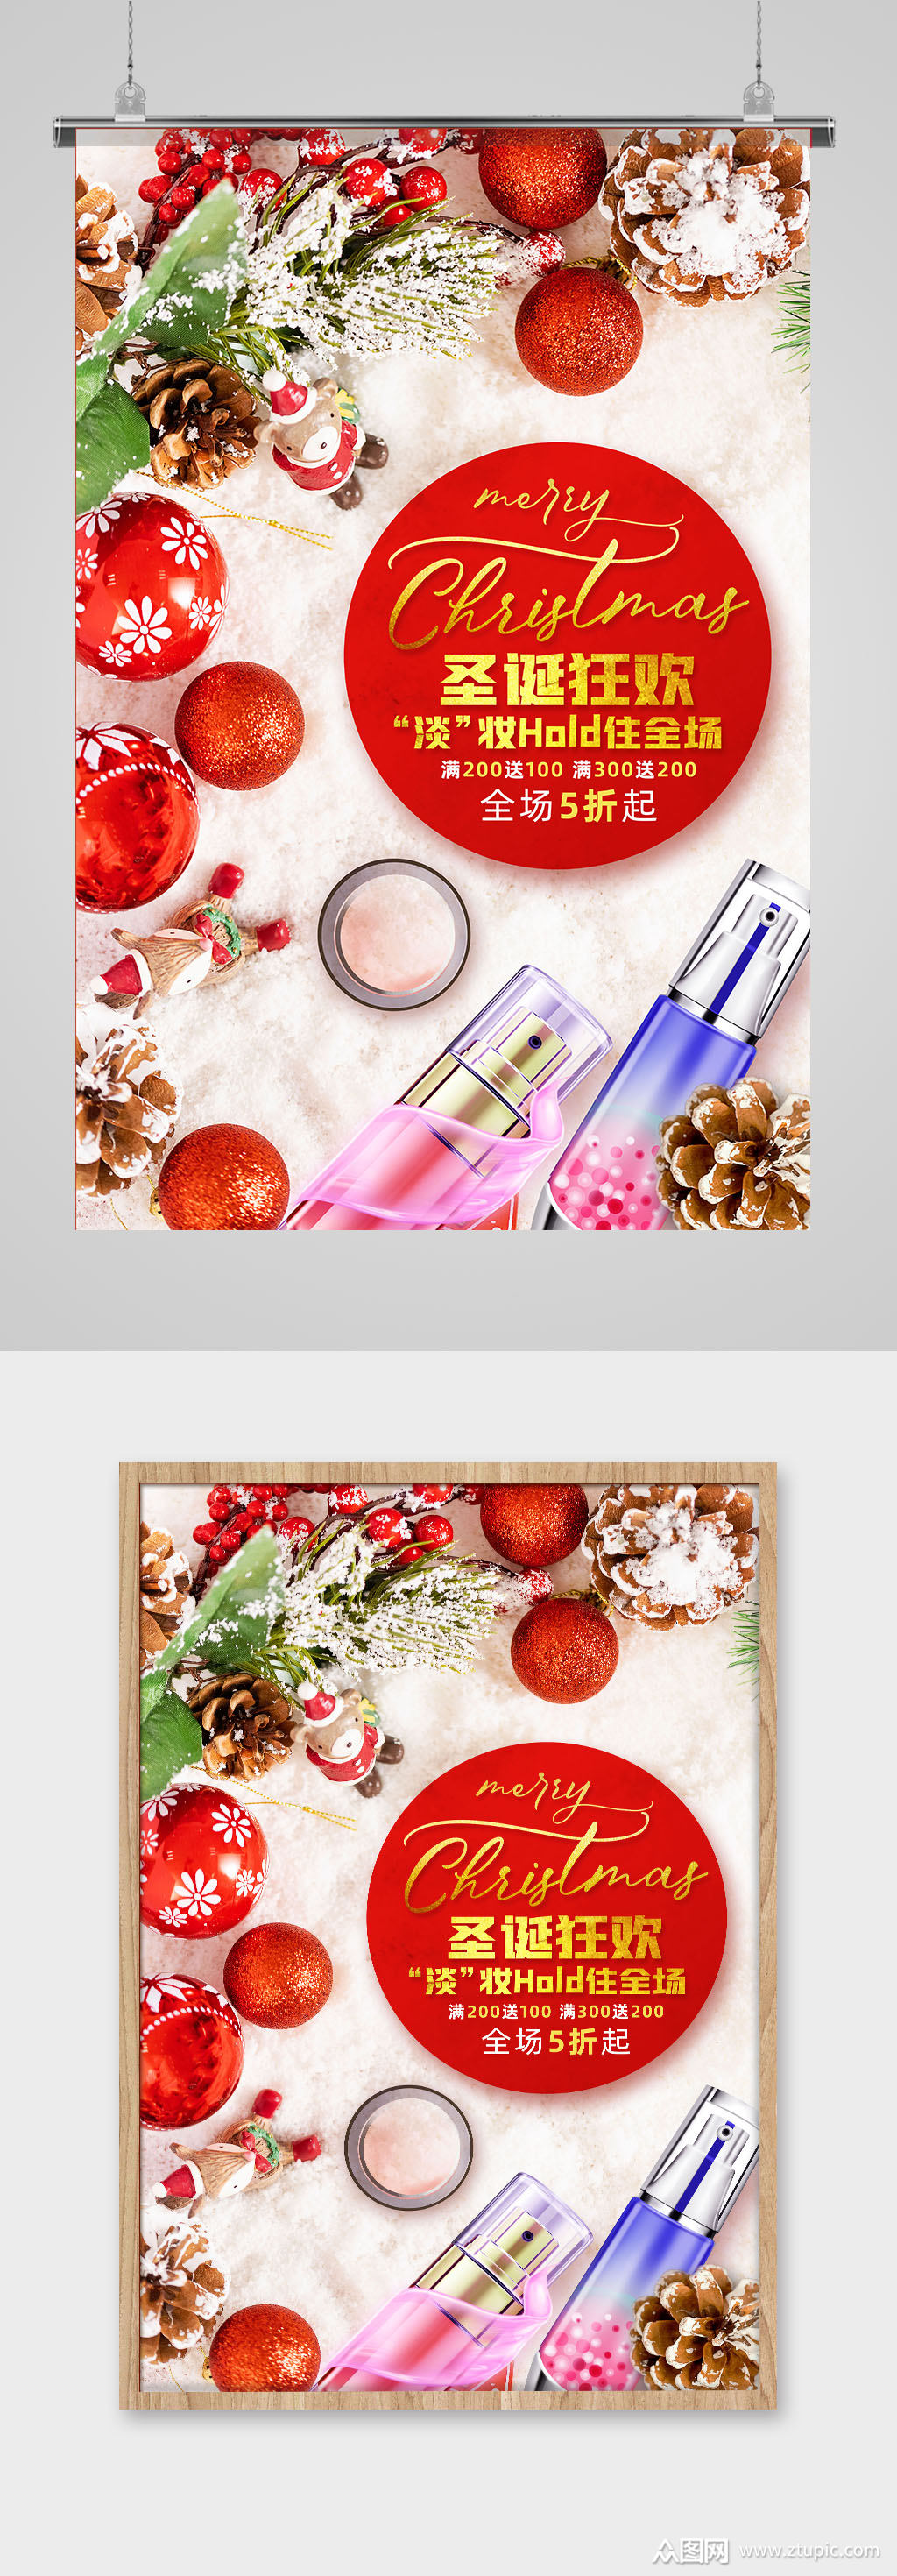 化妆品美妆产品圣诞节促销海报素材